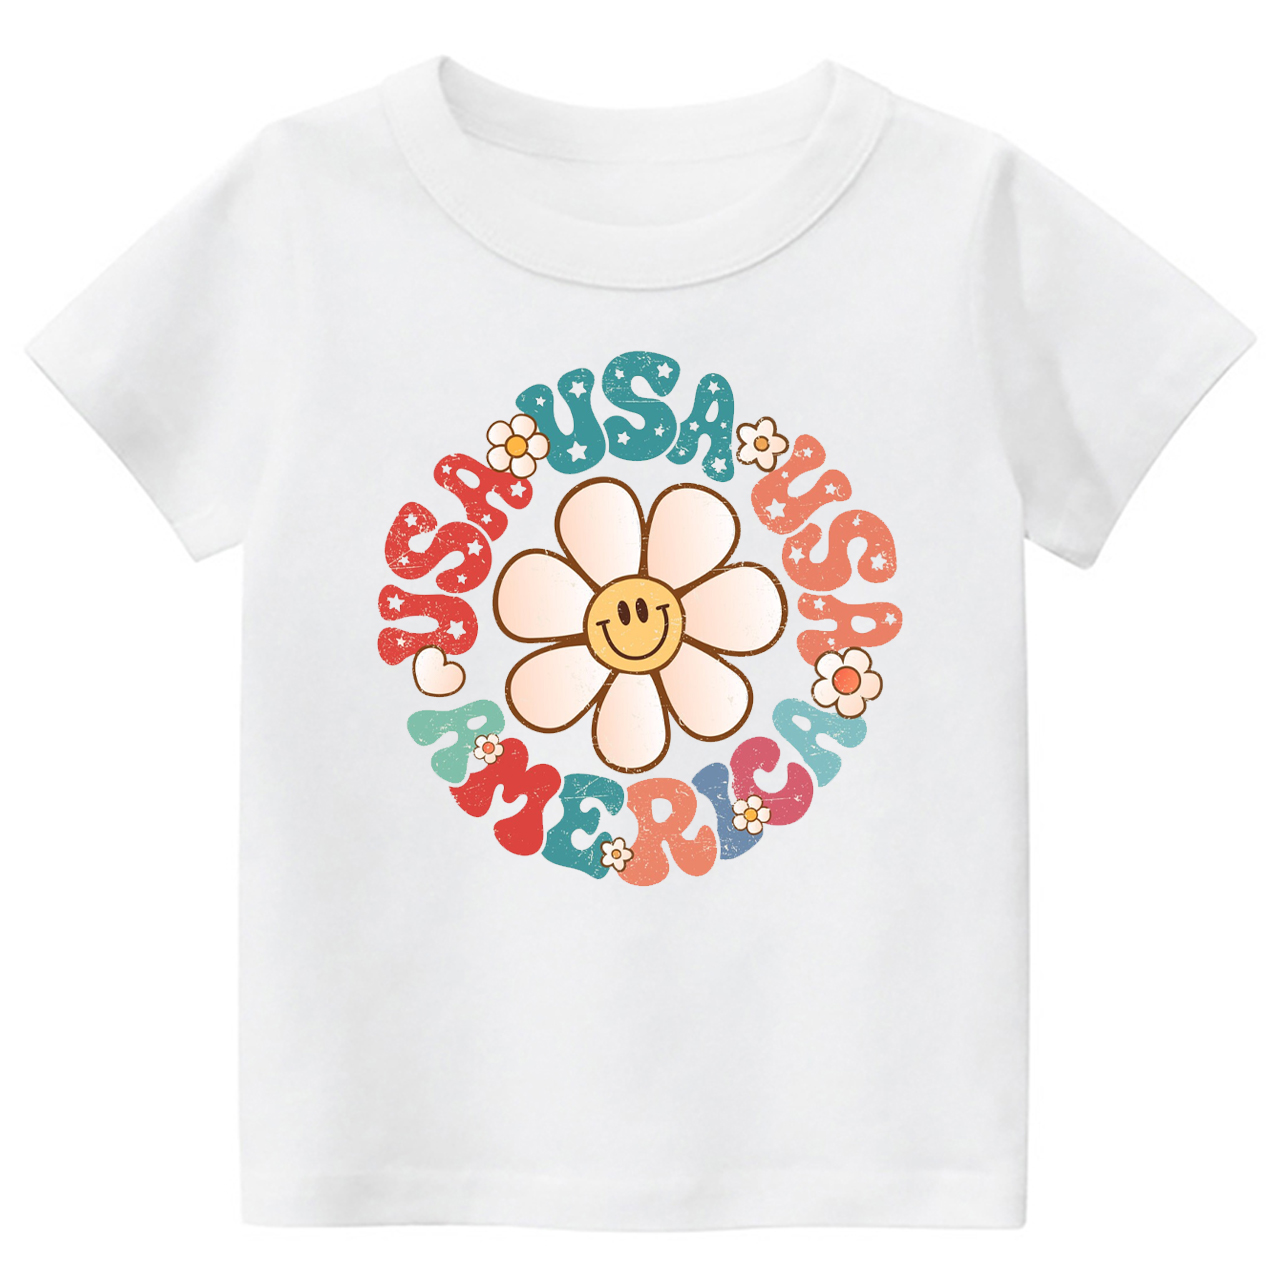 USA America Smiley Face Toddler Shirt